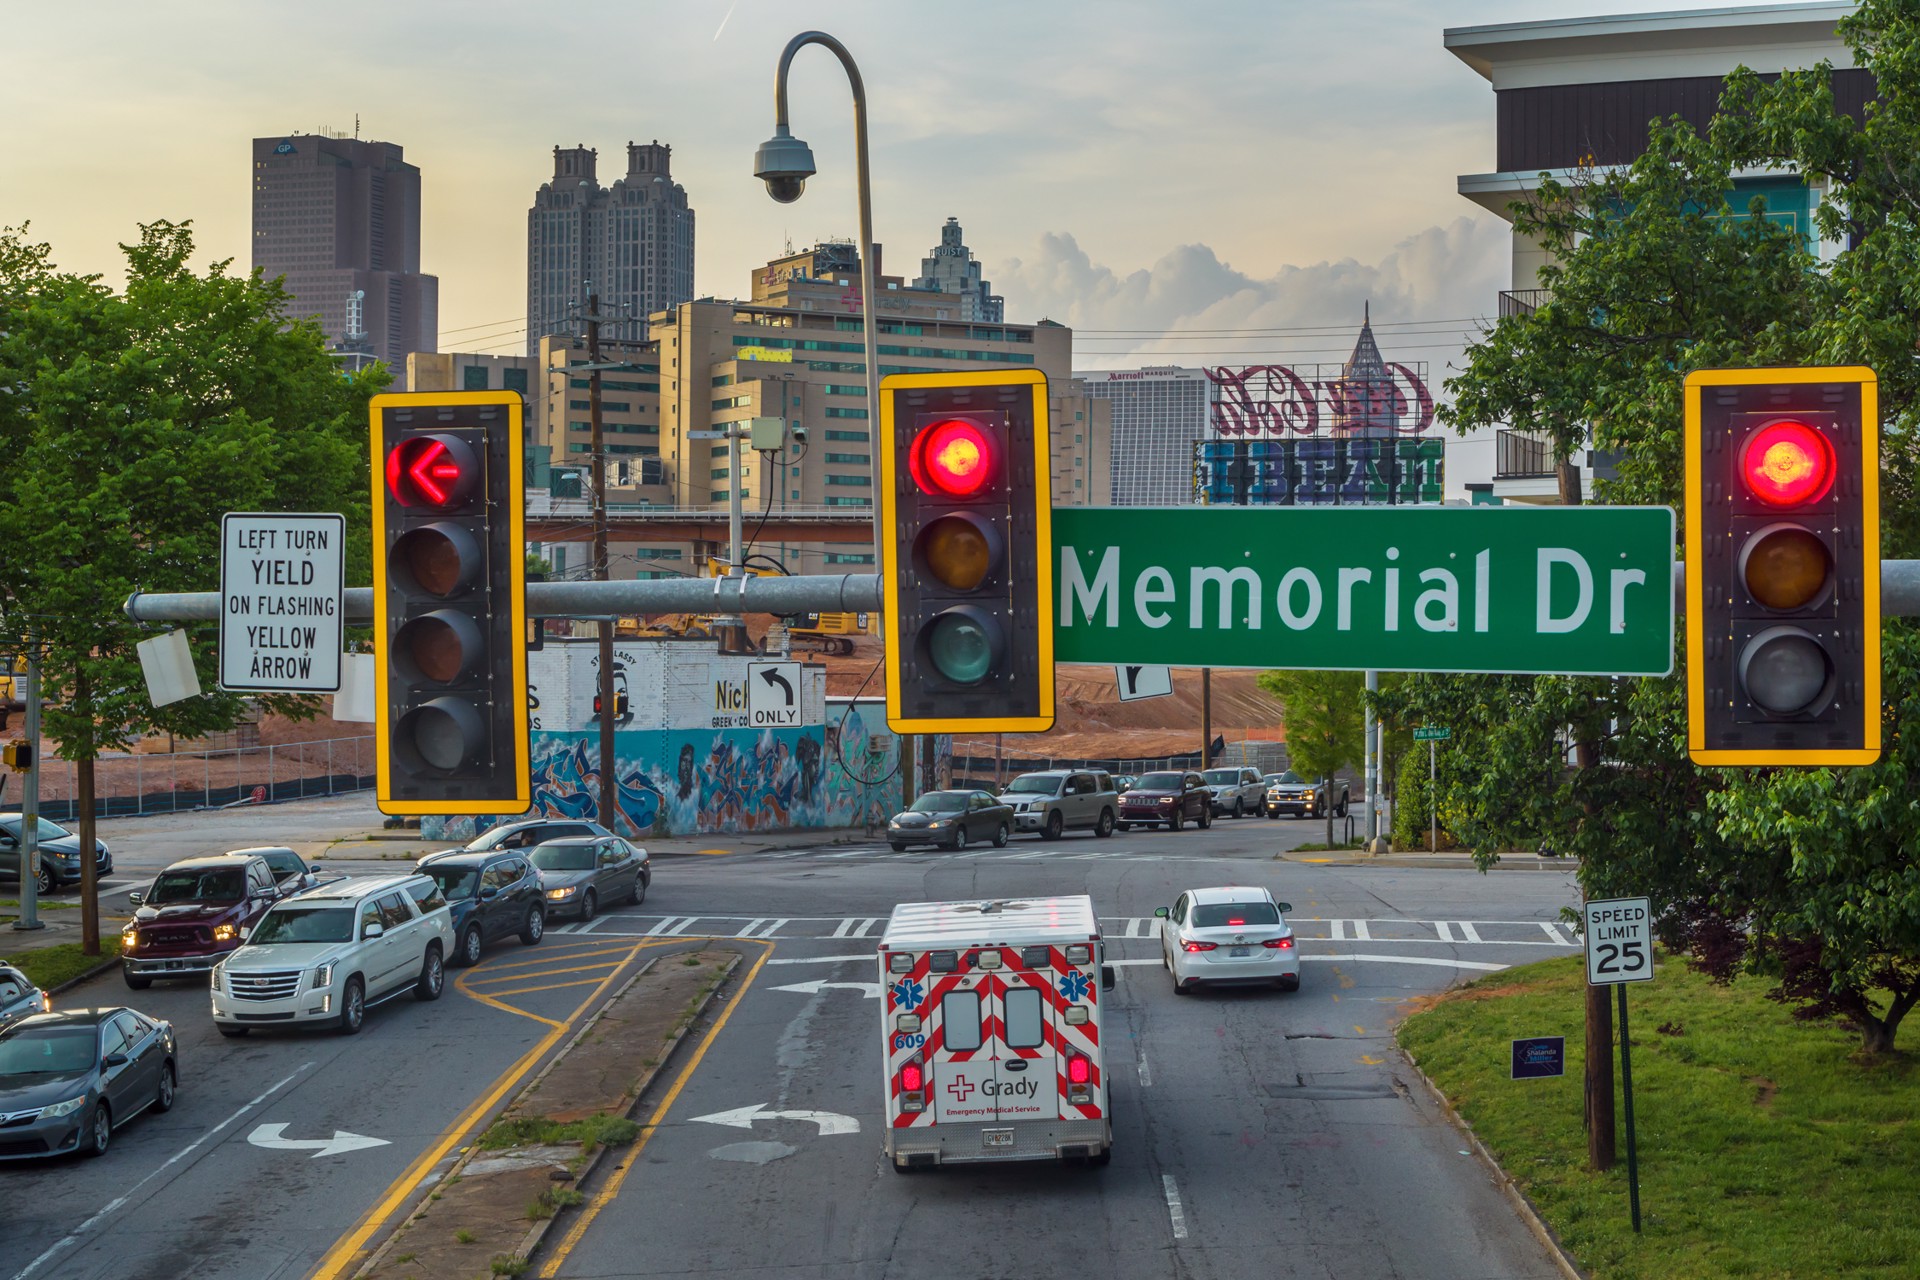 245 Memorial Drive, Atlanta, GA by Peter Essick